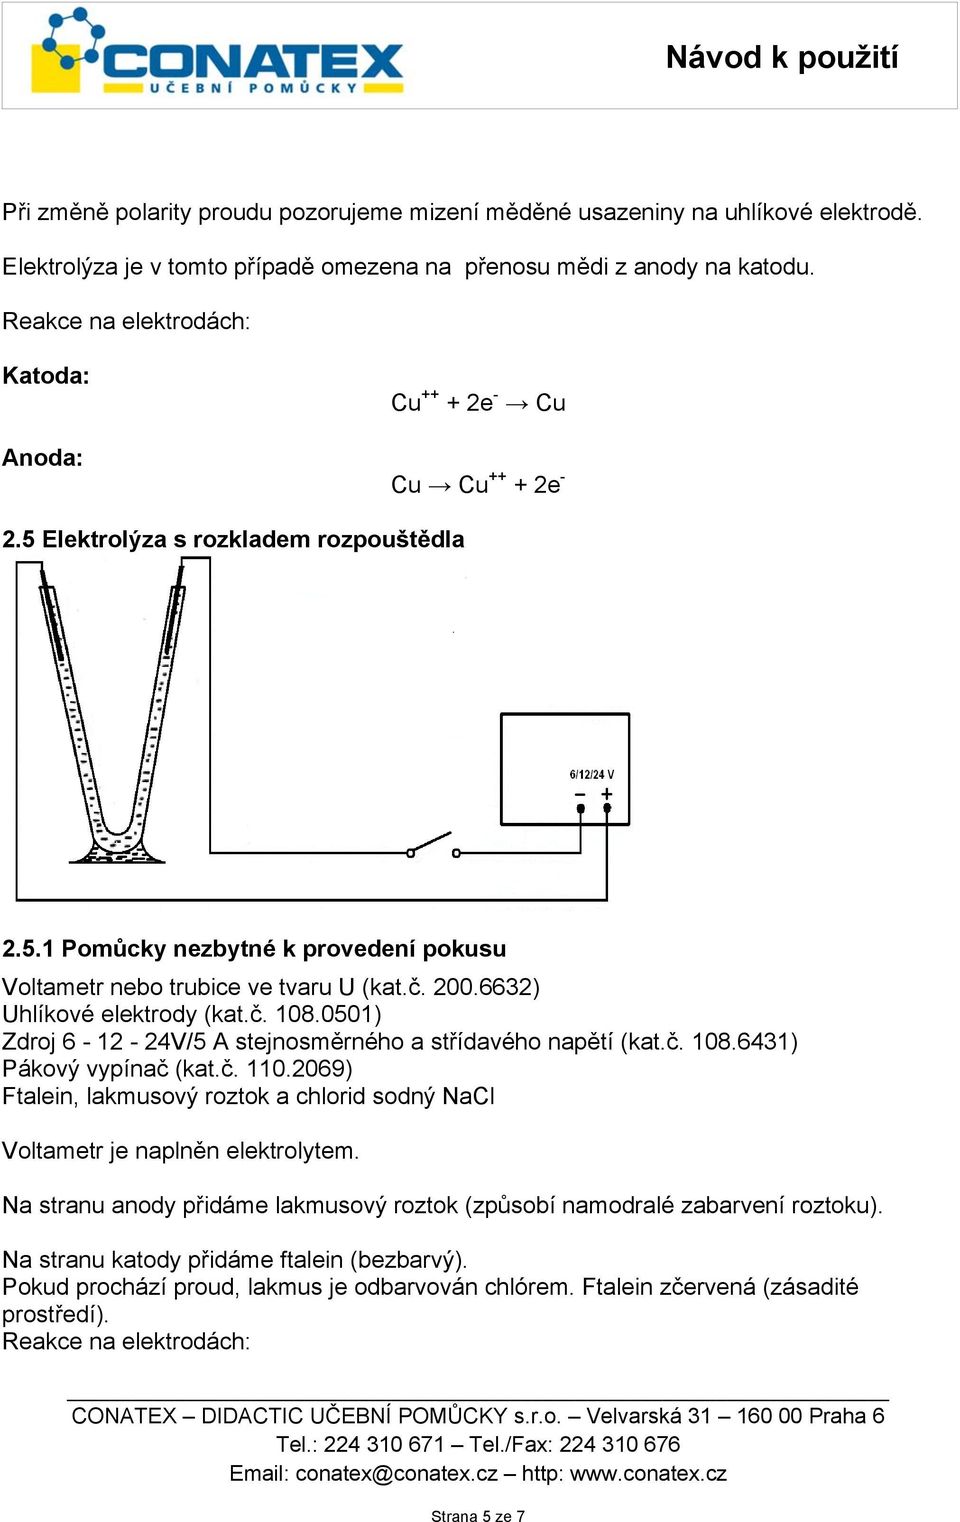 6632) Uhlíkové elektrody (kat.č. 108.0501) Zdroj 6-12 - 24V/5 A stejnosměrného a střídavého napětí (kat.č. 108.6431) Pákový vypínač (kat.č. 110.